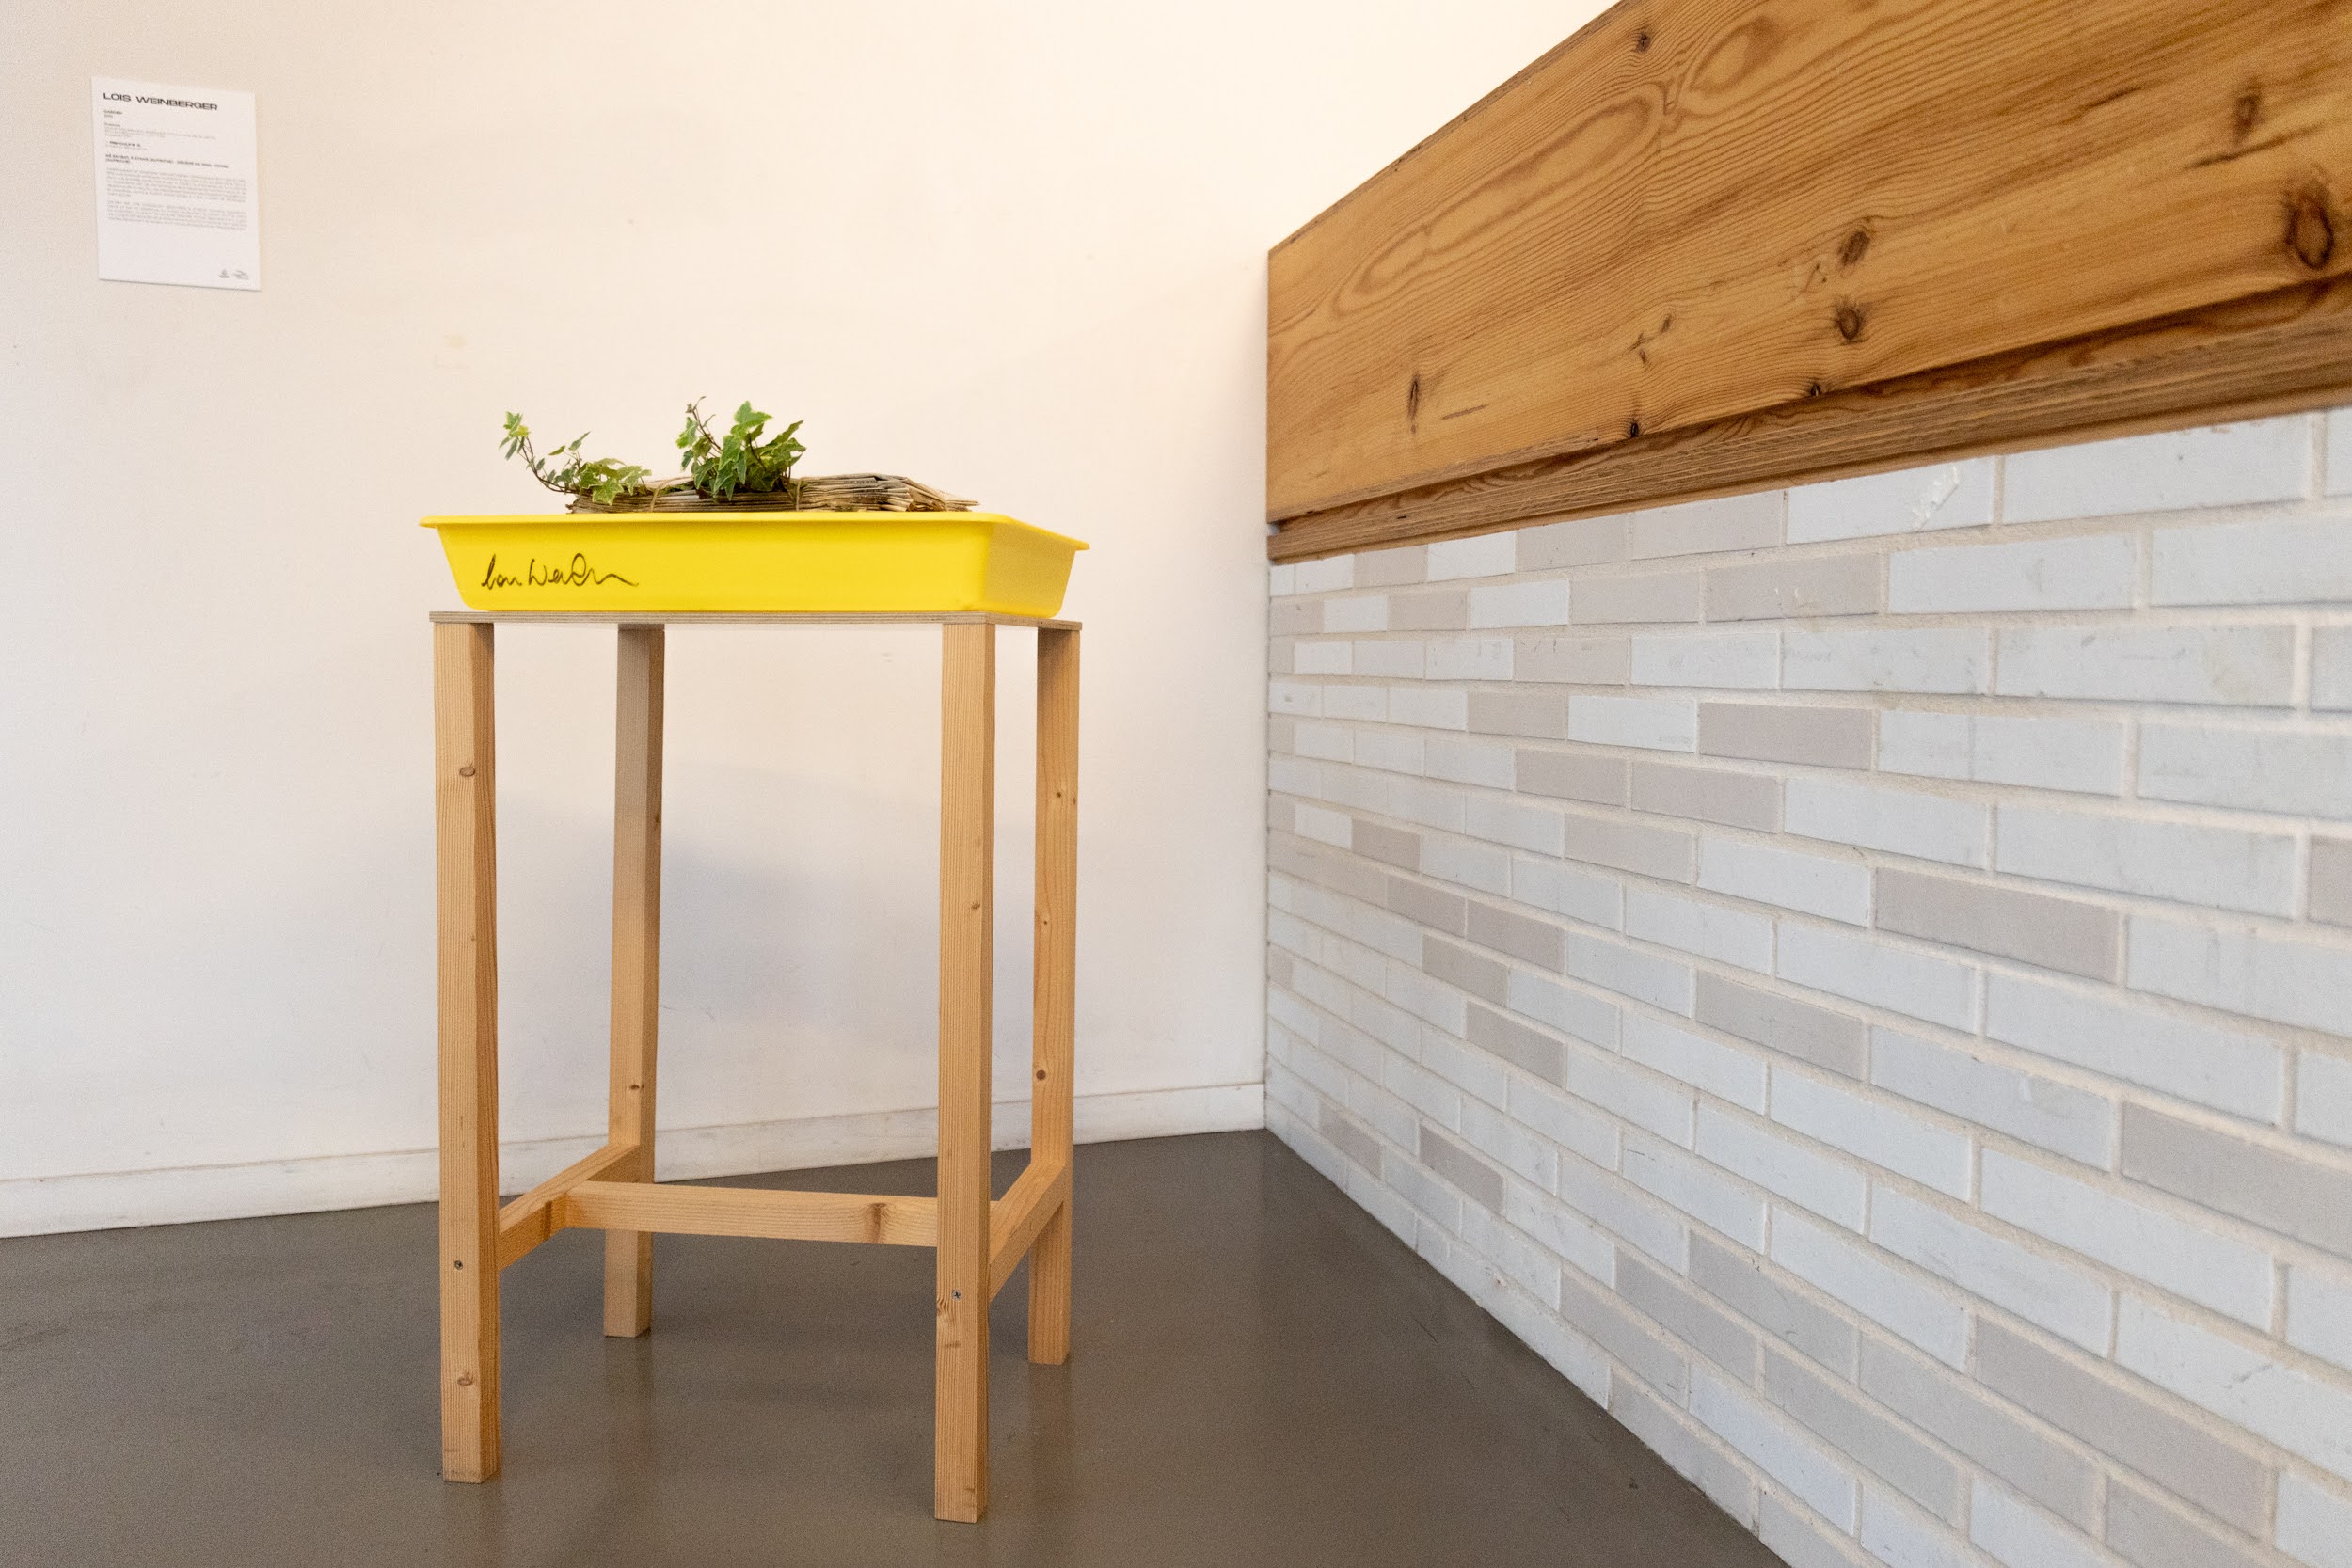 bac jaune avec pile de journaux et plantes, sur un support en bois, dans un intérieur avec carrelage et bois